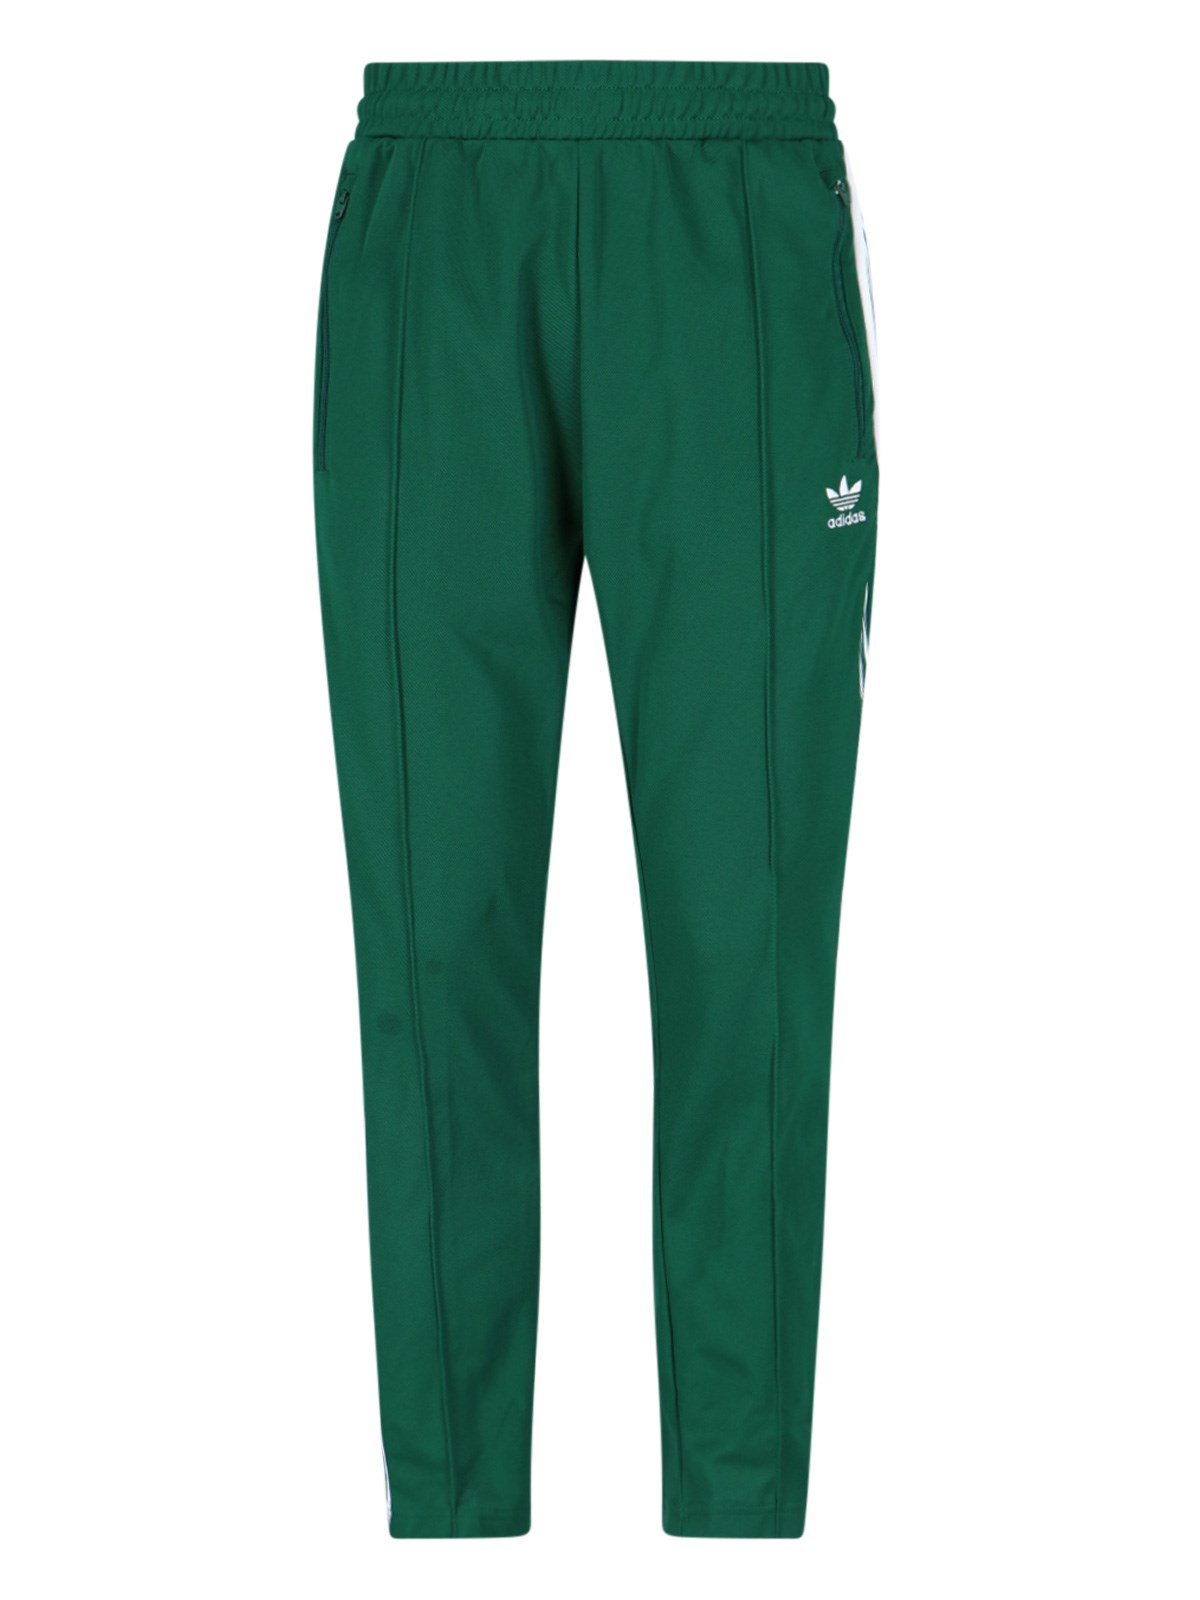 Adidas Originals Adicolor Classics Beckenbauer Track Pants In |